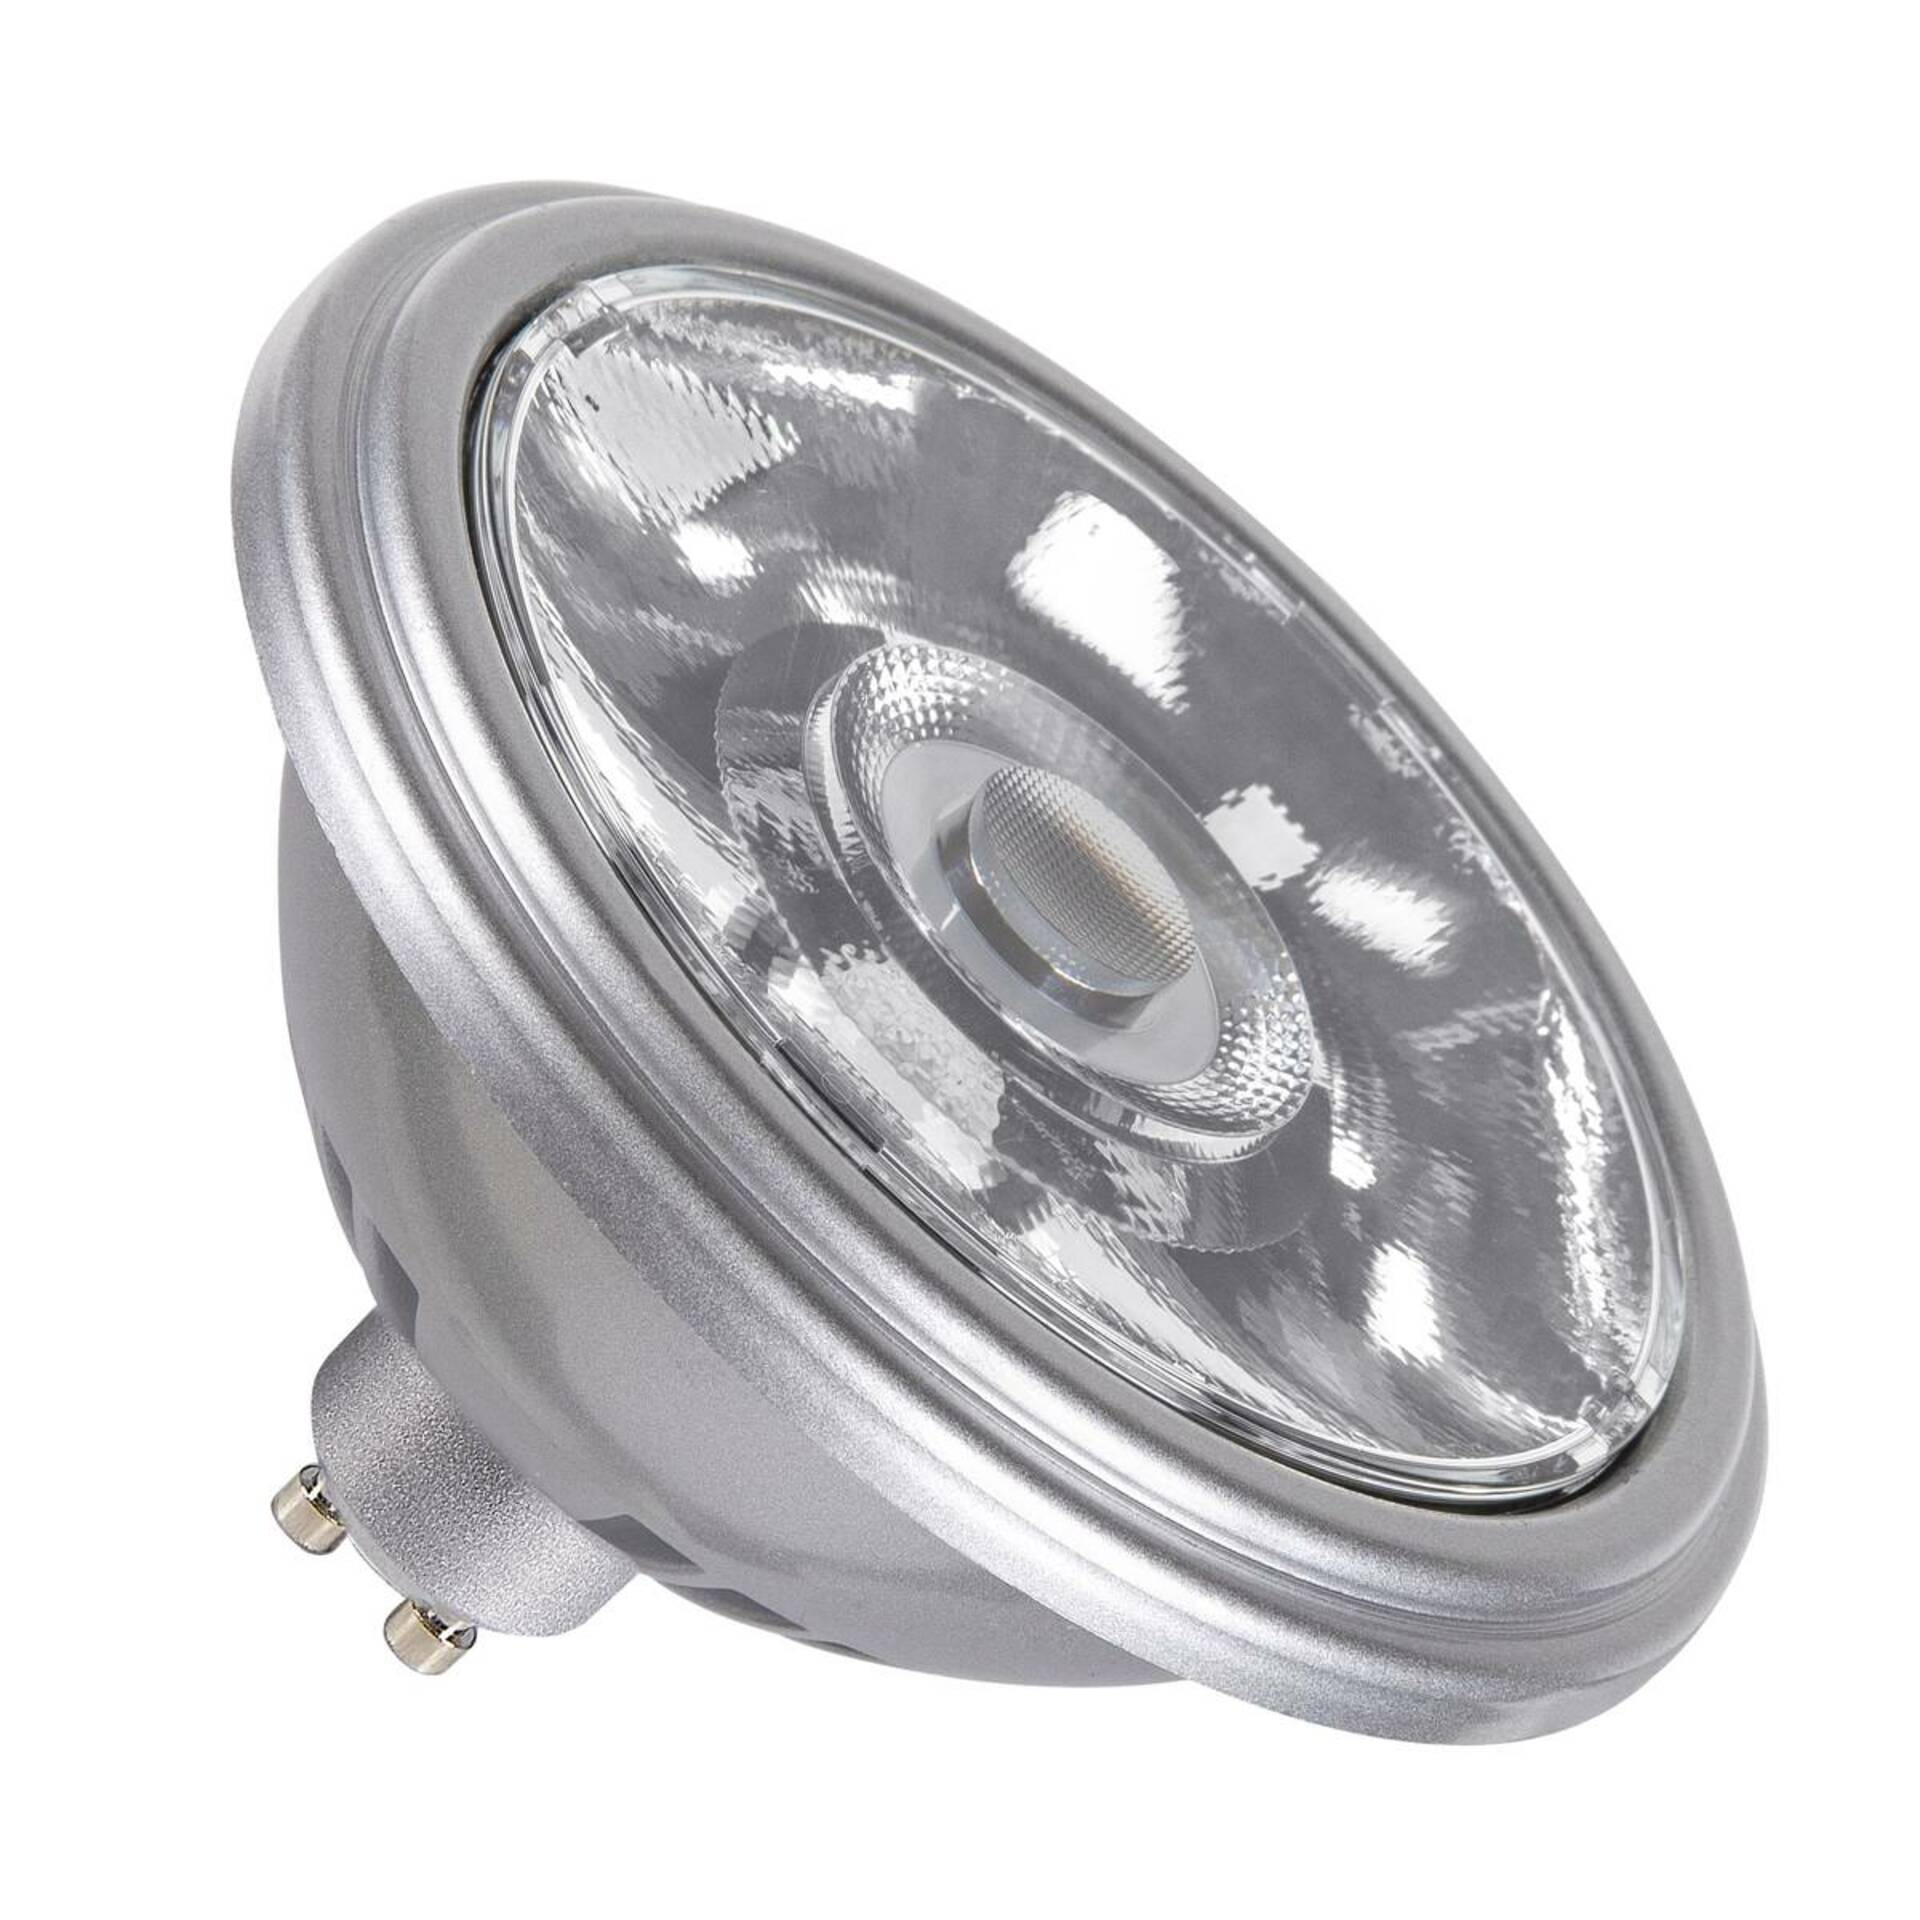 SLV BIG WHITE QPAR111 GU10 LED světelný zdroj stříbrný 12,5 W 2700 K CRI 90 10° 1005275